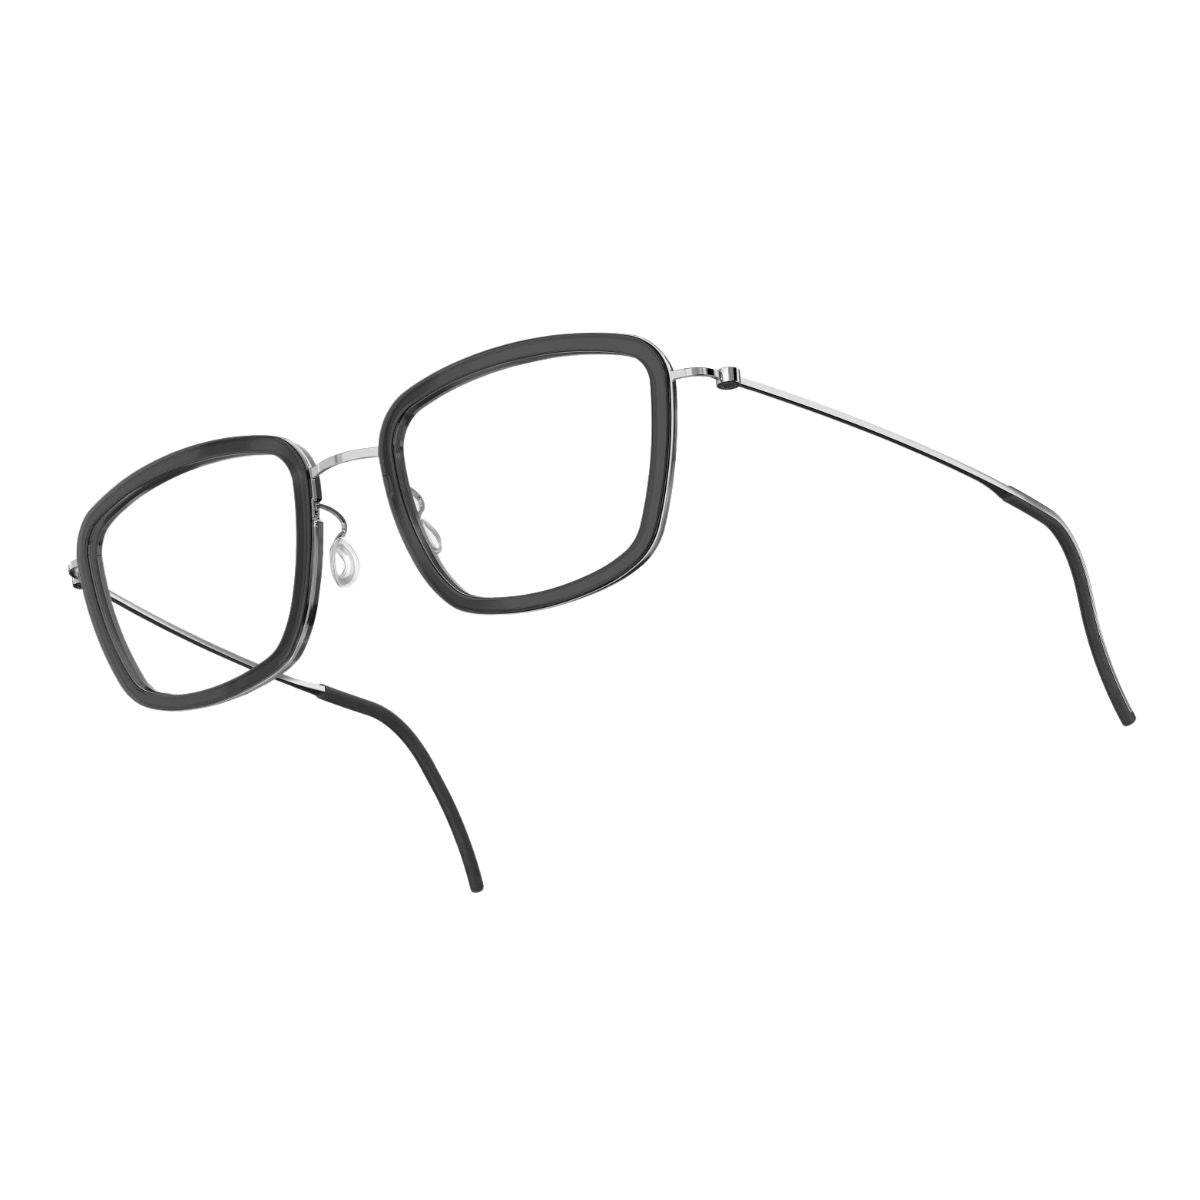 "Buy Stylish Lindberg Eyewear, Optical Frames For Men & Women At Optorium"